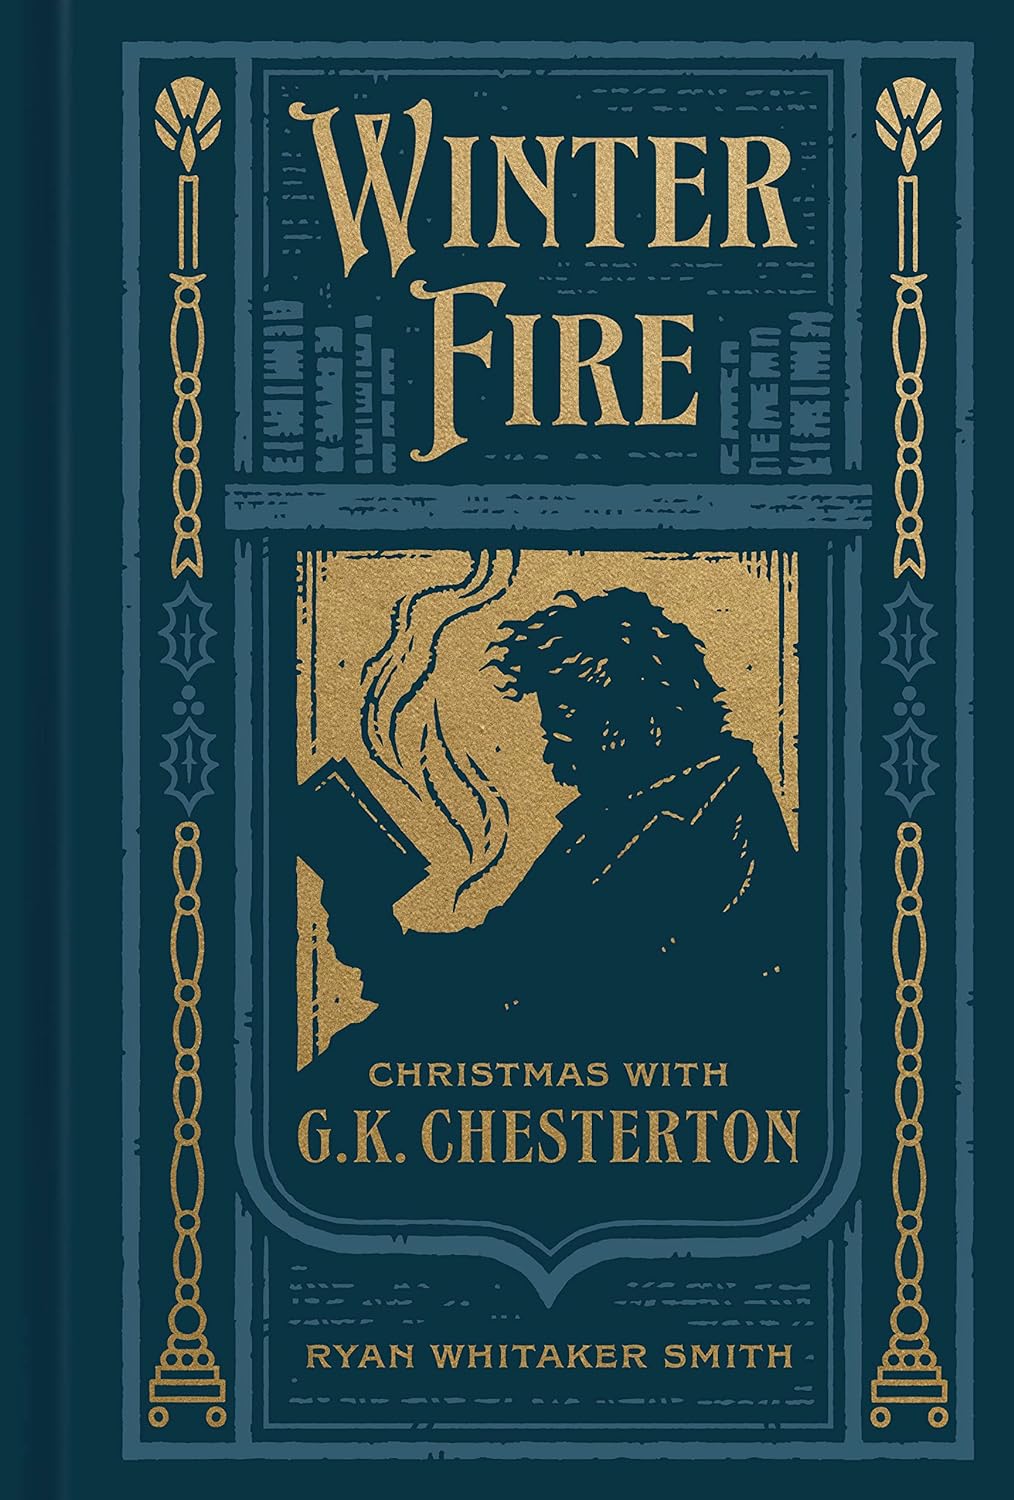 Winter Fire (Chesterton - hardcover